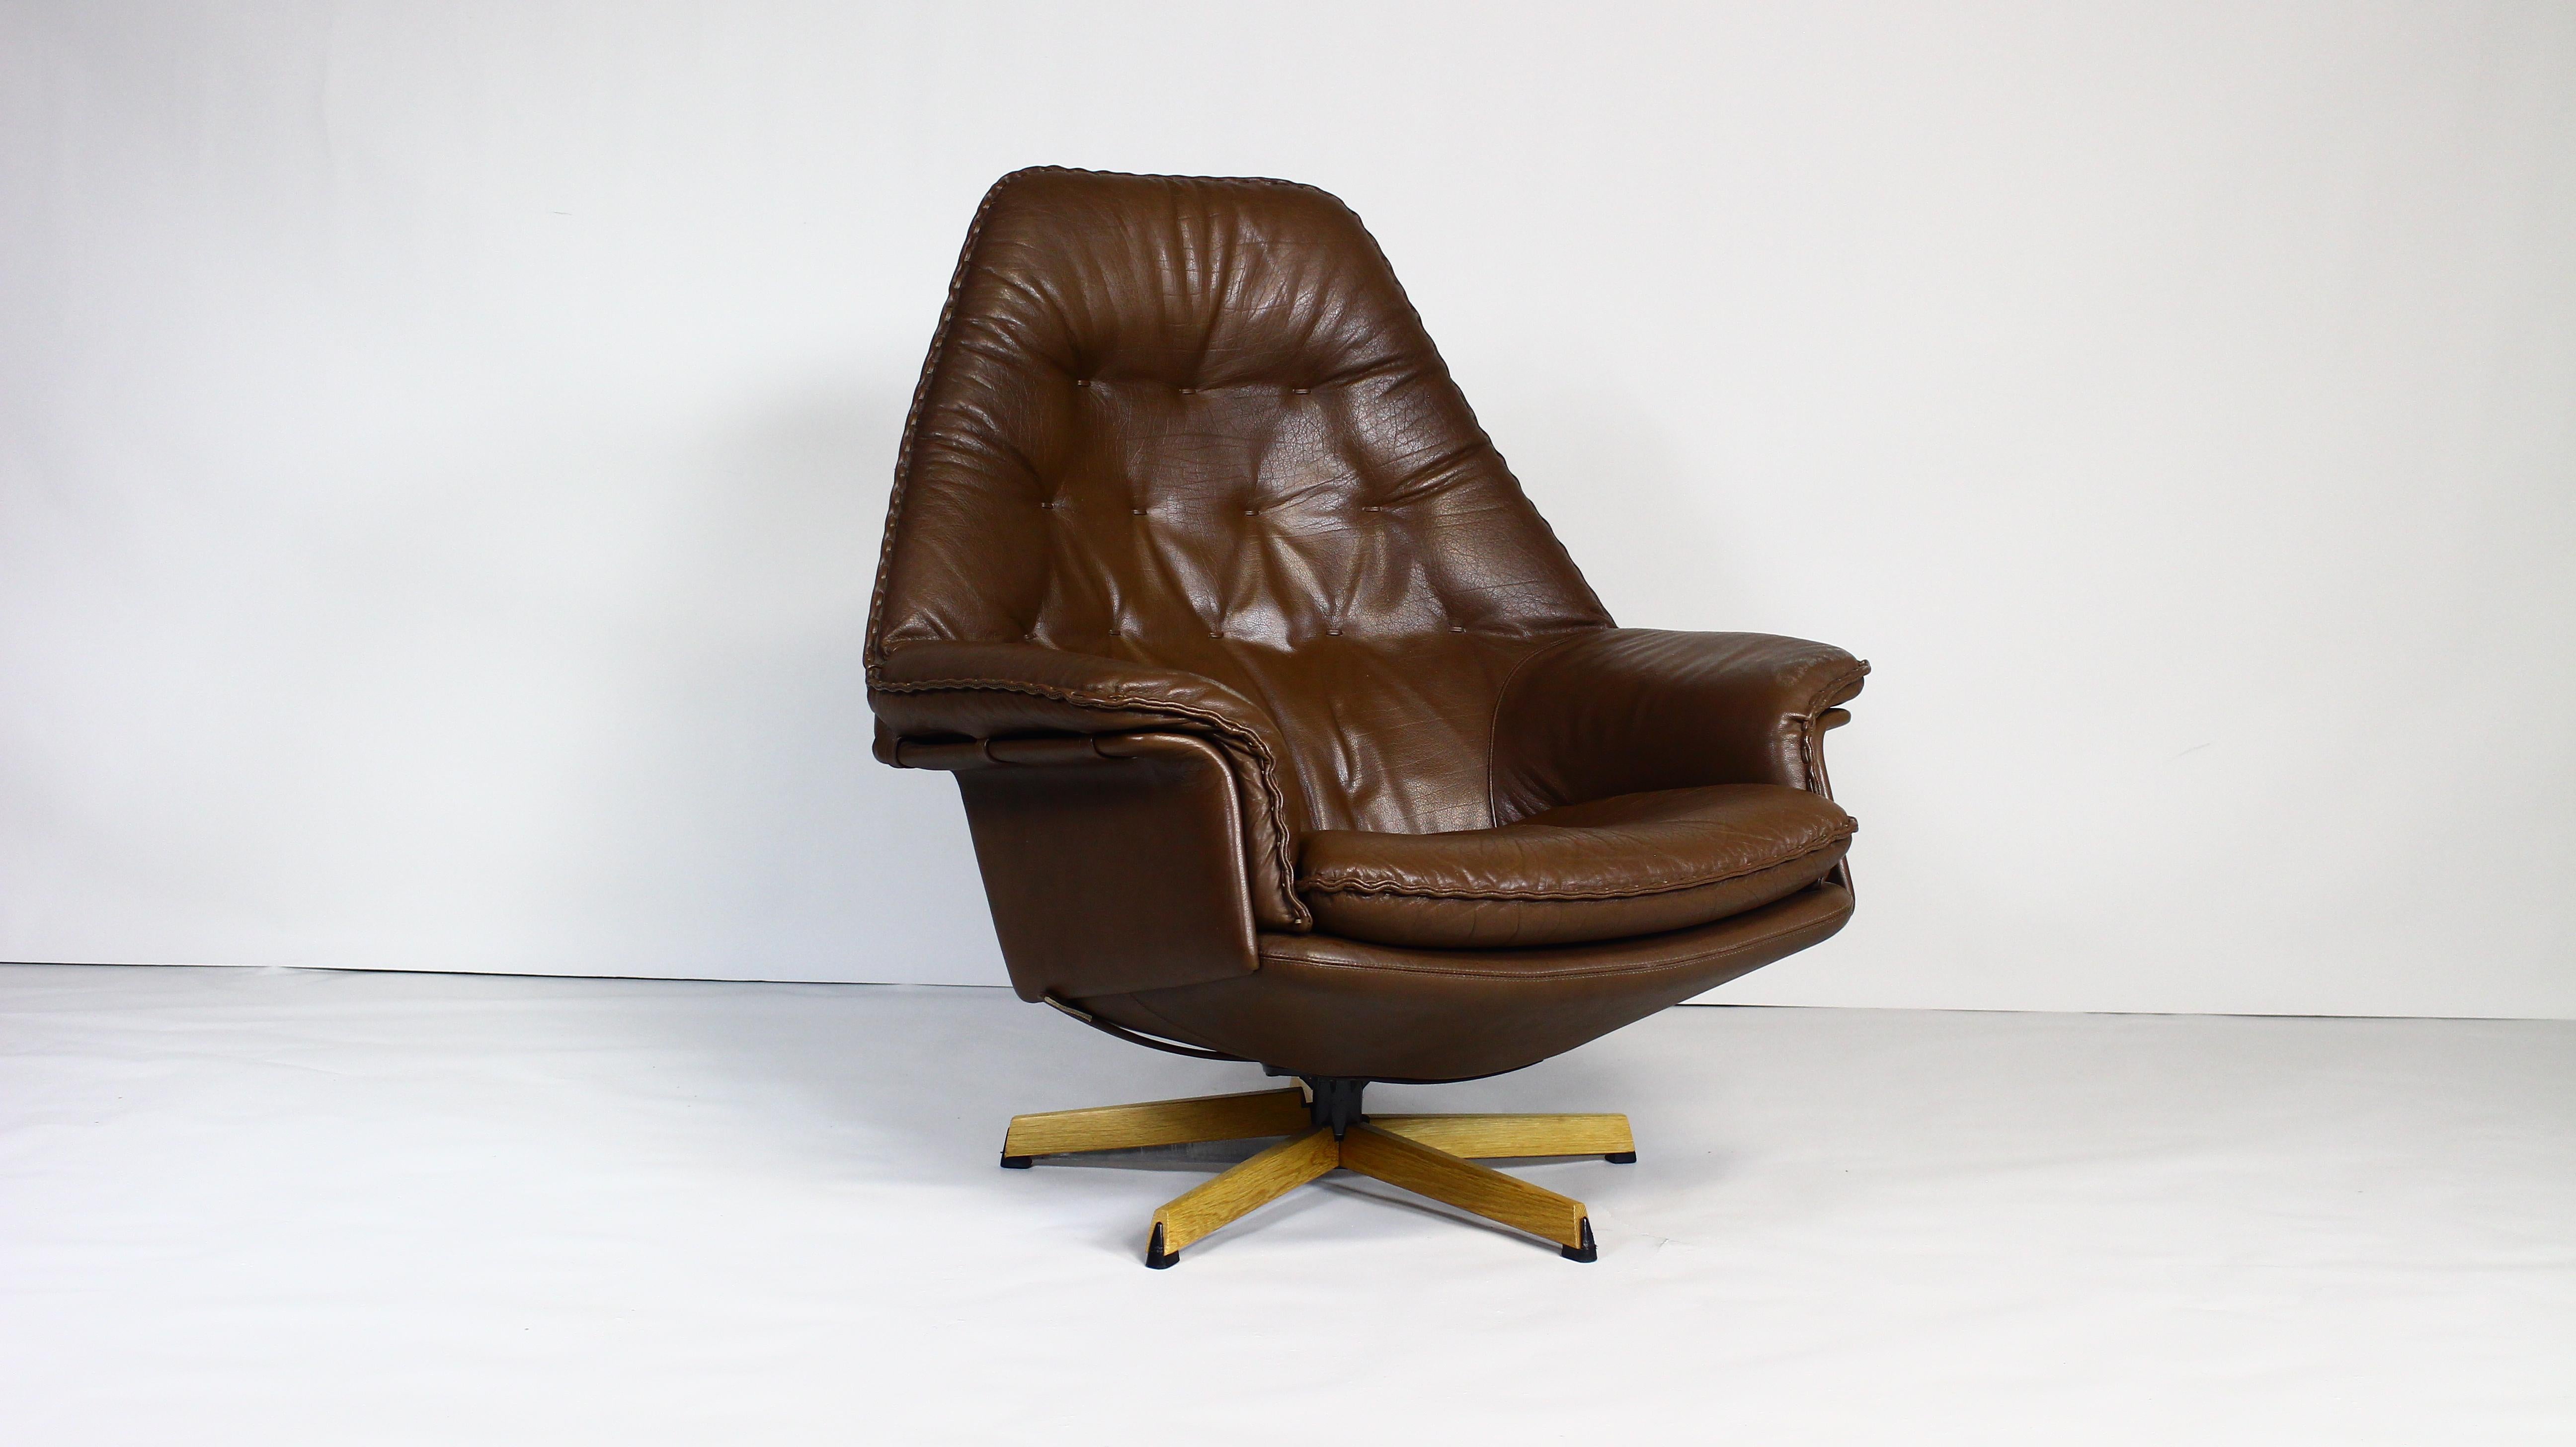 Chaise longue pivotante danoise des années 1960, conçue par le célèbre duo de designers Acton Schubell et Ib Madsen.
La chaise est entièrement recouverte de cuir de buffle texturé véritable, de couleur marron.
Les coussins du dossier, de l'assise et